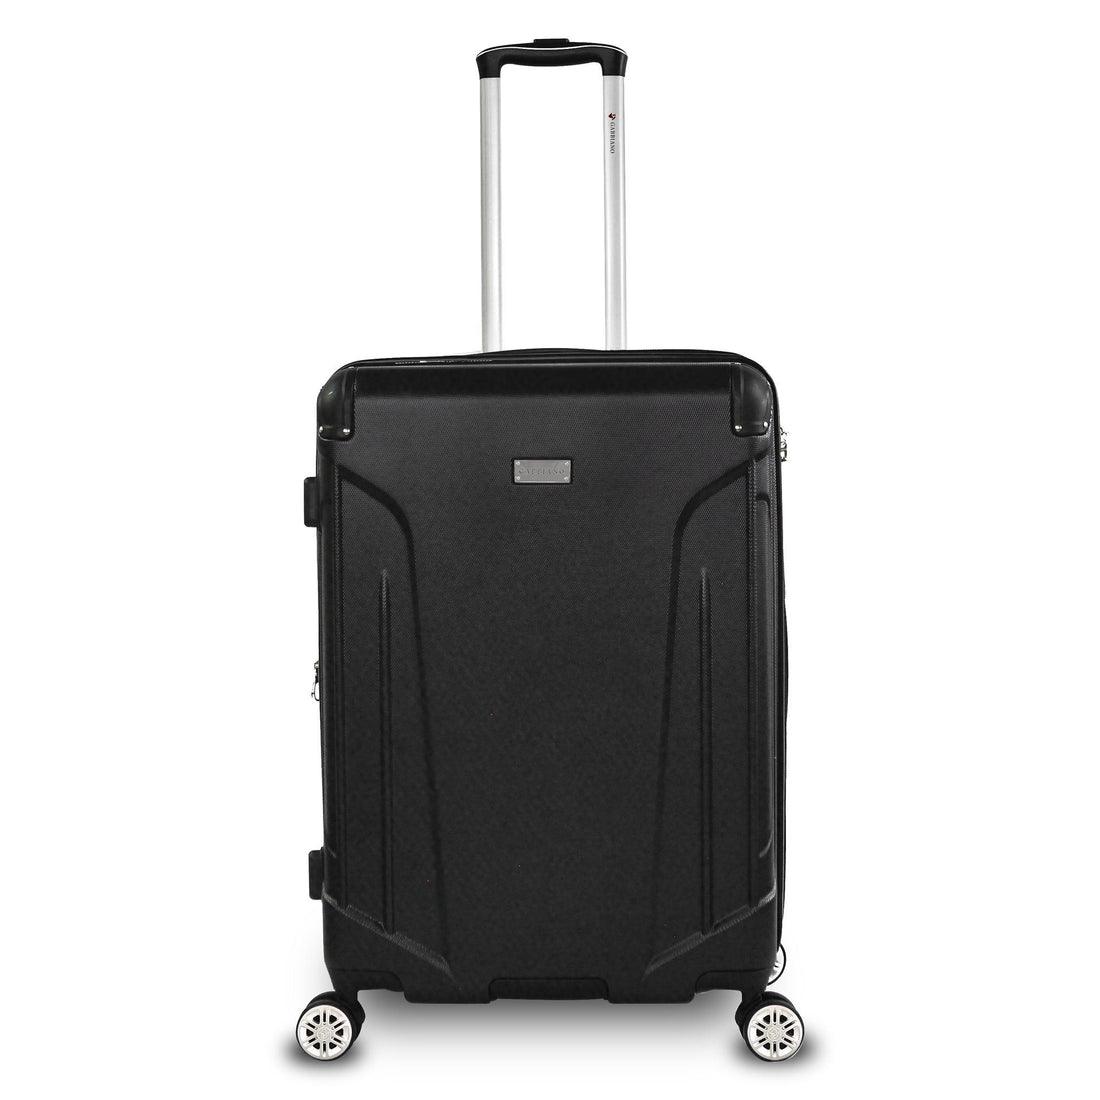 Ga2040 Pc+Abs Resin Hard Case 20'' - Voyage Luggage